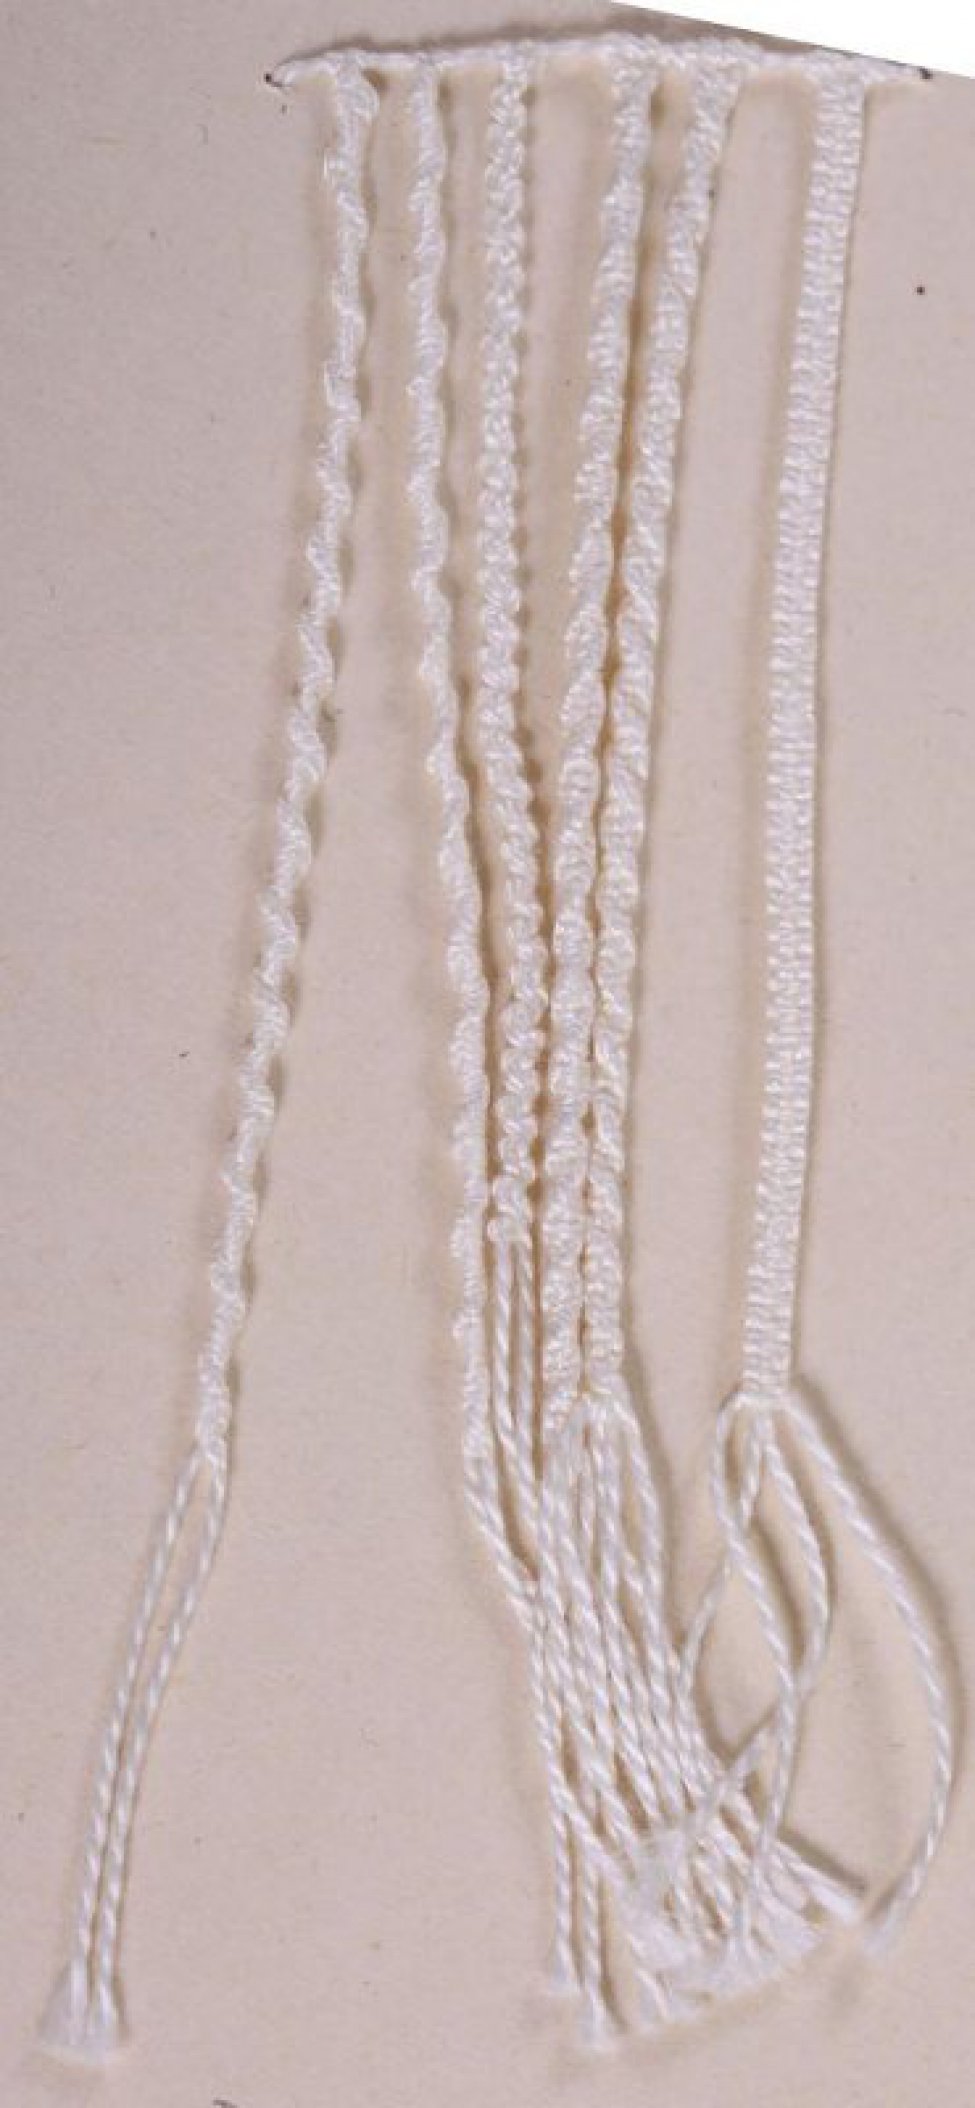 Шесть шнуров простого плетения соединены в верхней части. На концах каждого шнура бахрома. 3 шнура из двух нитей. 3 шнура из четырёх нитей. Образец пришит к картонному листу.